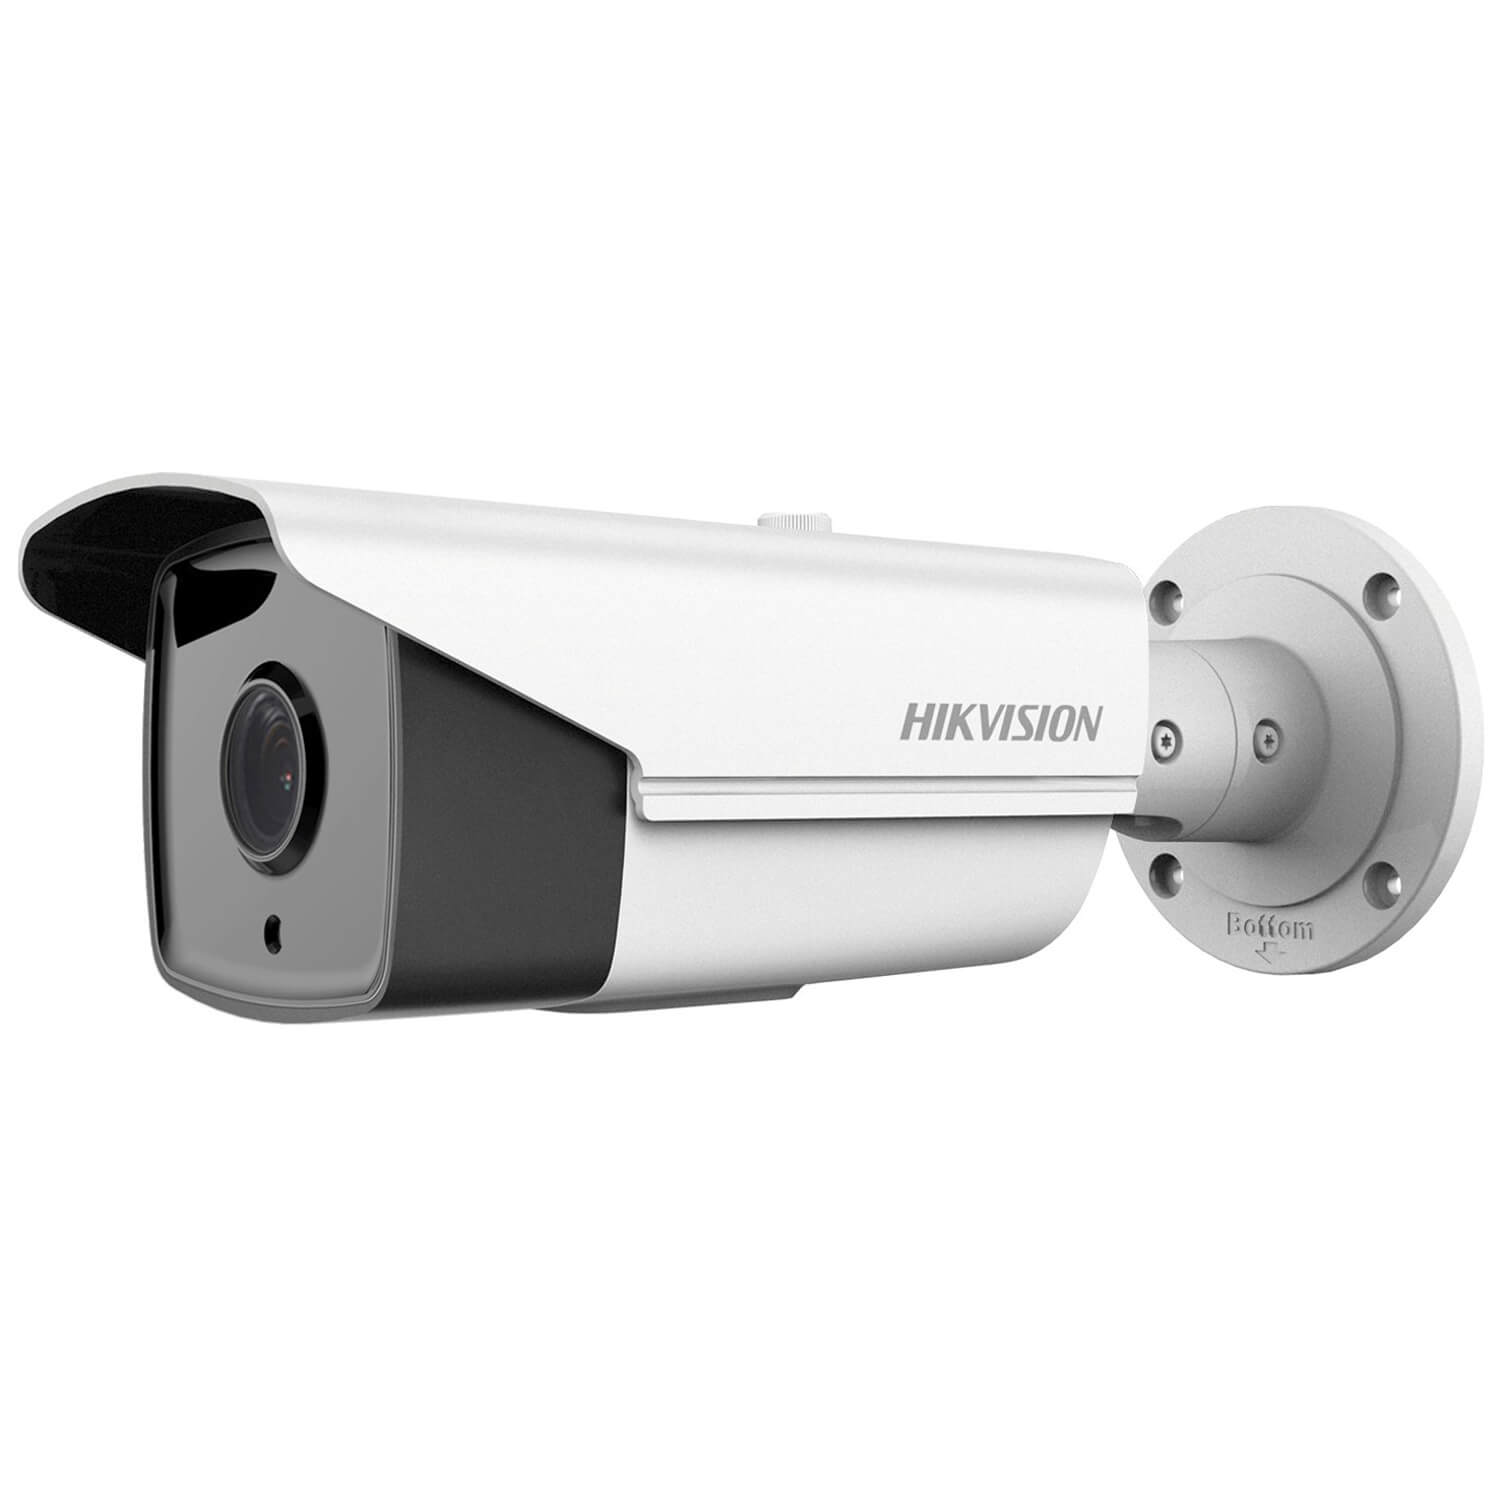  Camera de supraveghere Hikvision DS-2CD2T42WD-I3 4MM, 2688 x 1520 